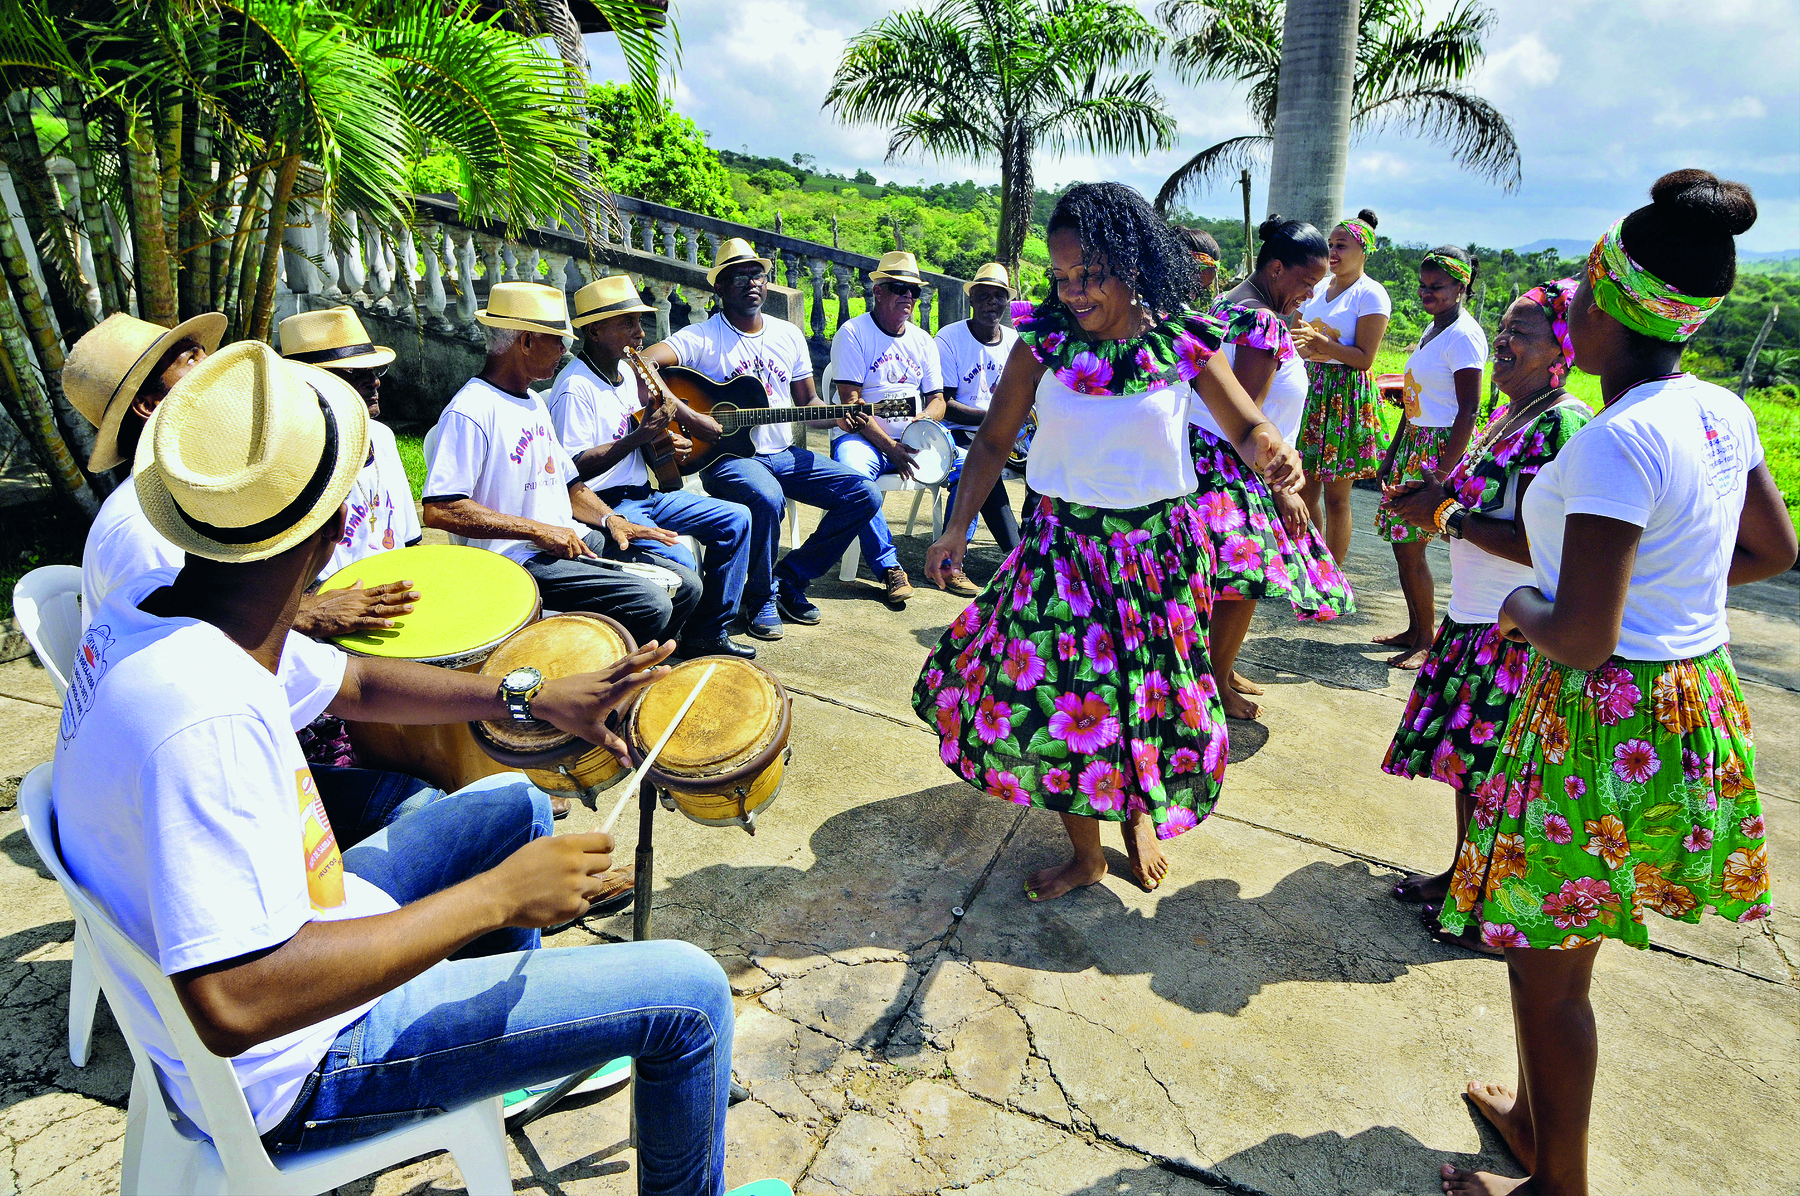 Fotografia. Grupo de mulheres negras de camiseta branca e saia florida, dançando. À esquerda, perto delas, homens negros de camiseta branca e chapéu de palha, sentados, tocando instrumentos musicais.